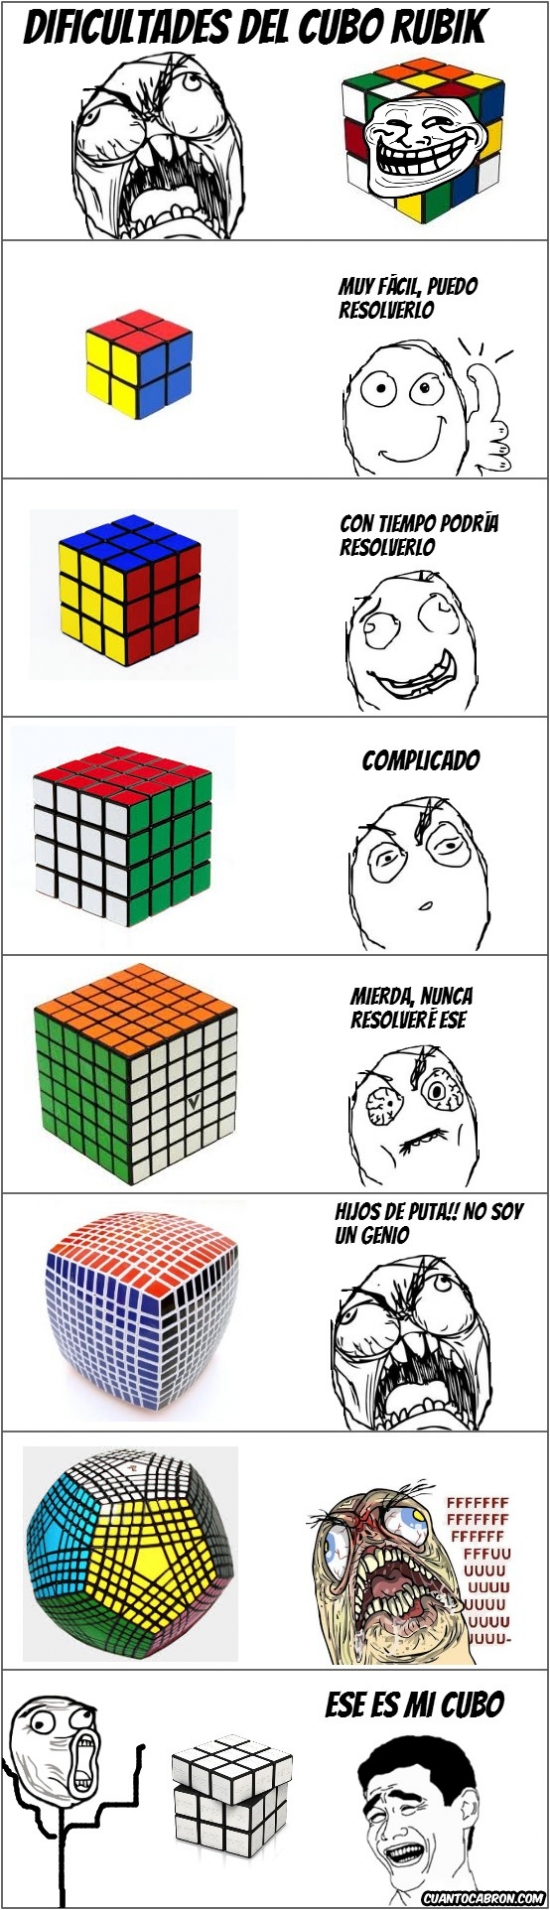 Yao - El cubo de Rubik llevado más allá